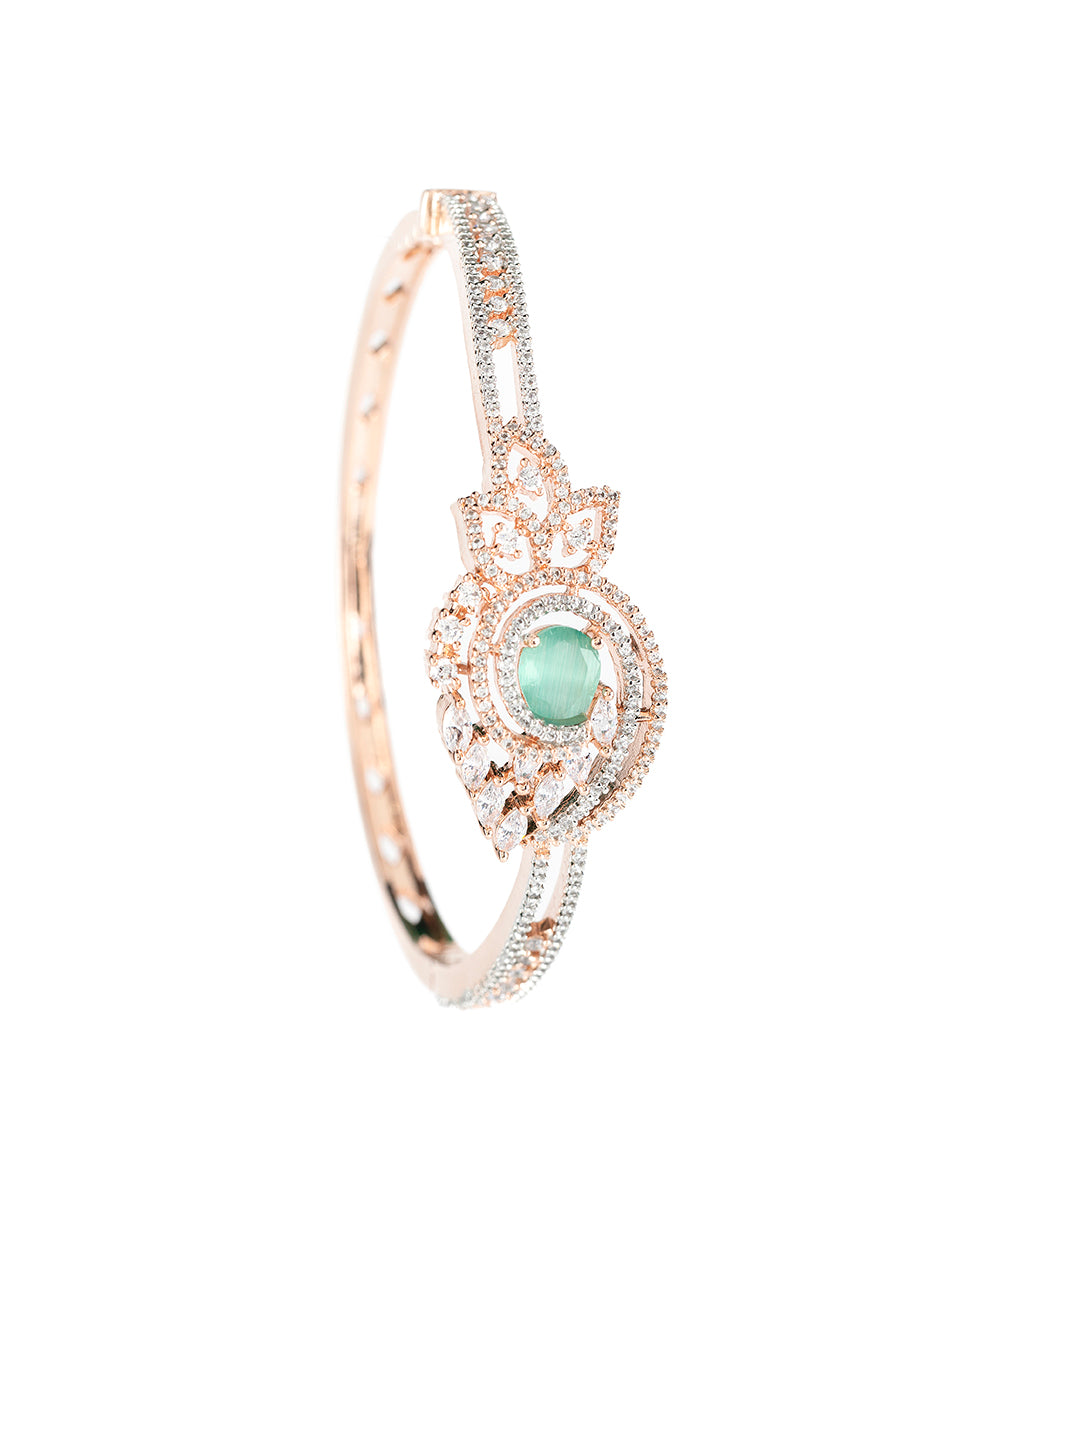 Mint Green Leaf Design AD Rose Gold-Plated Bracelet